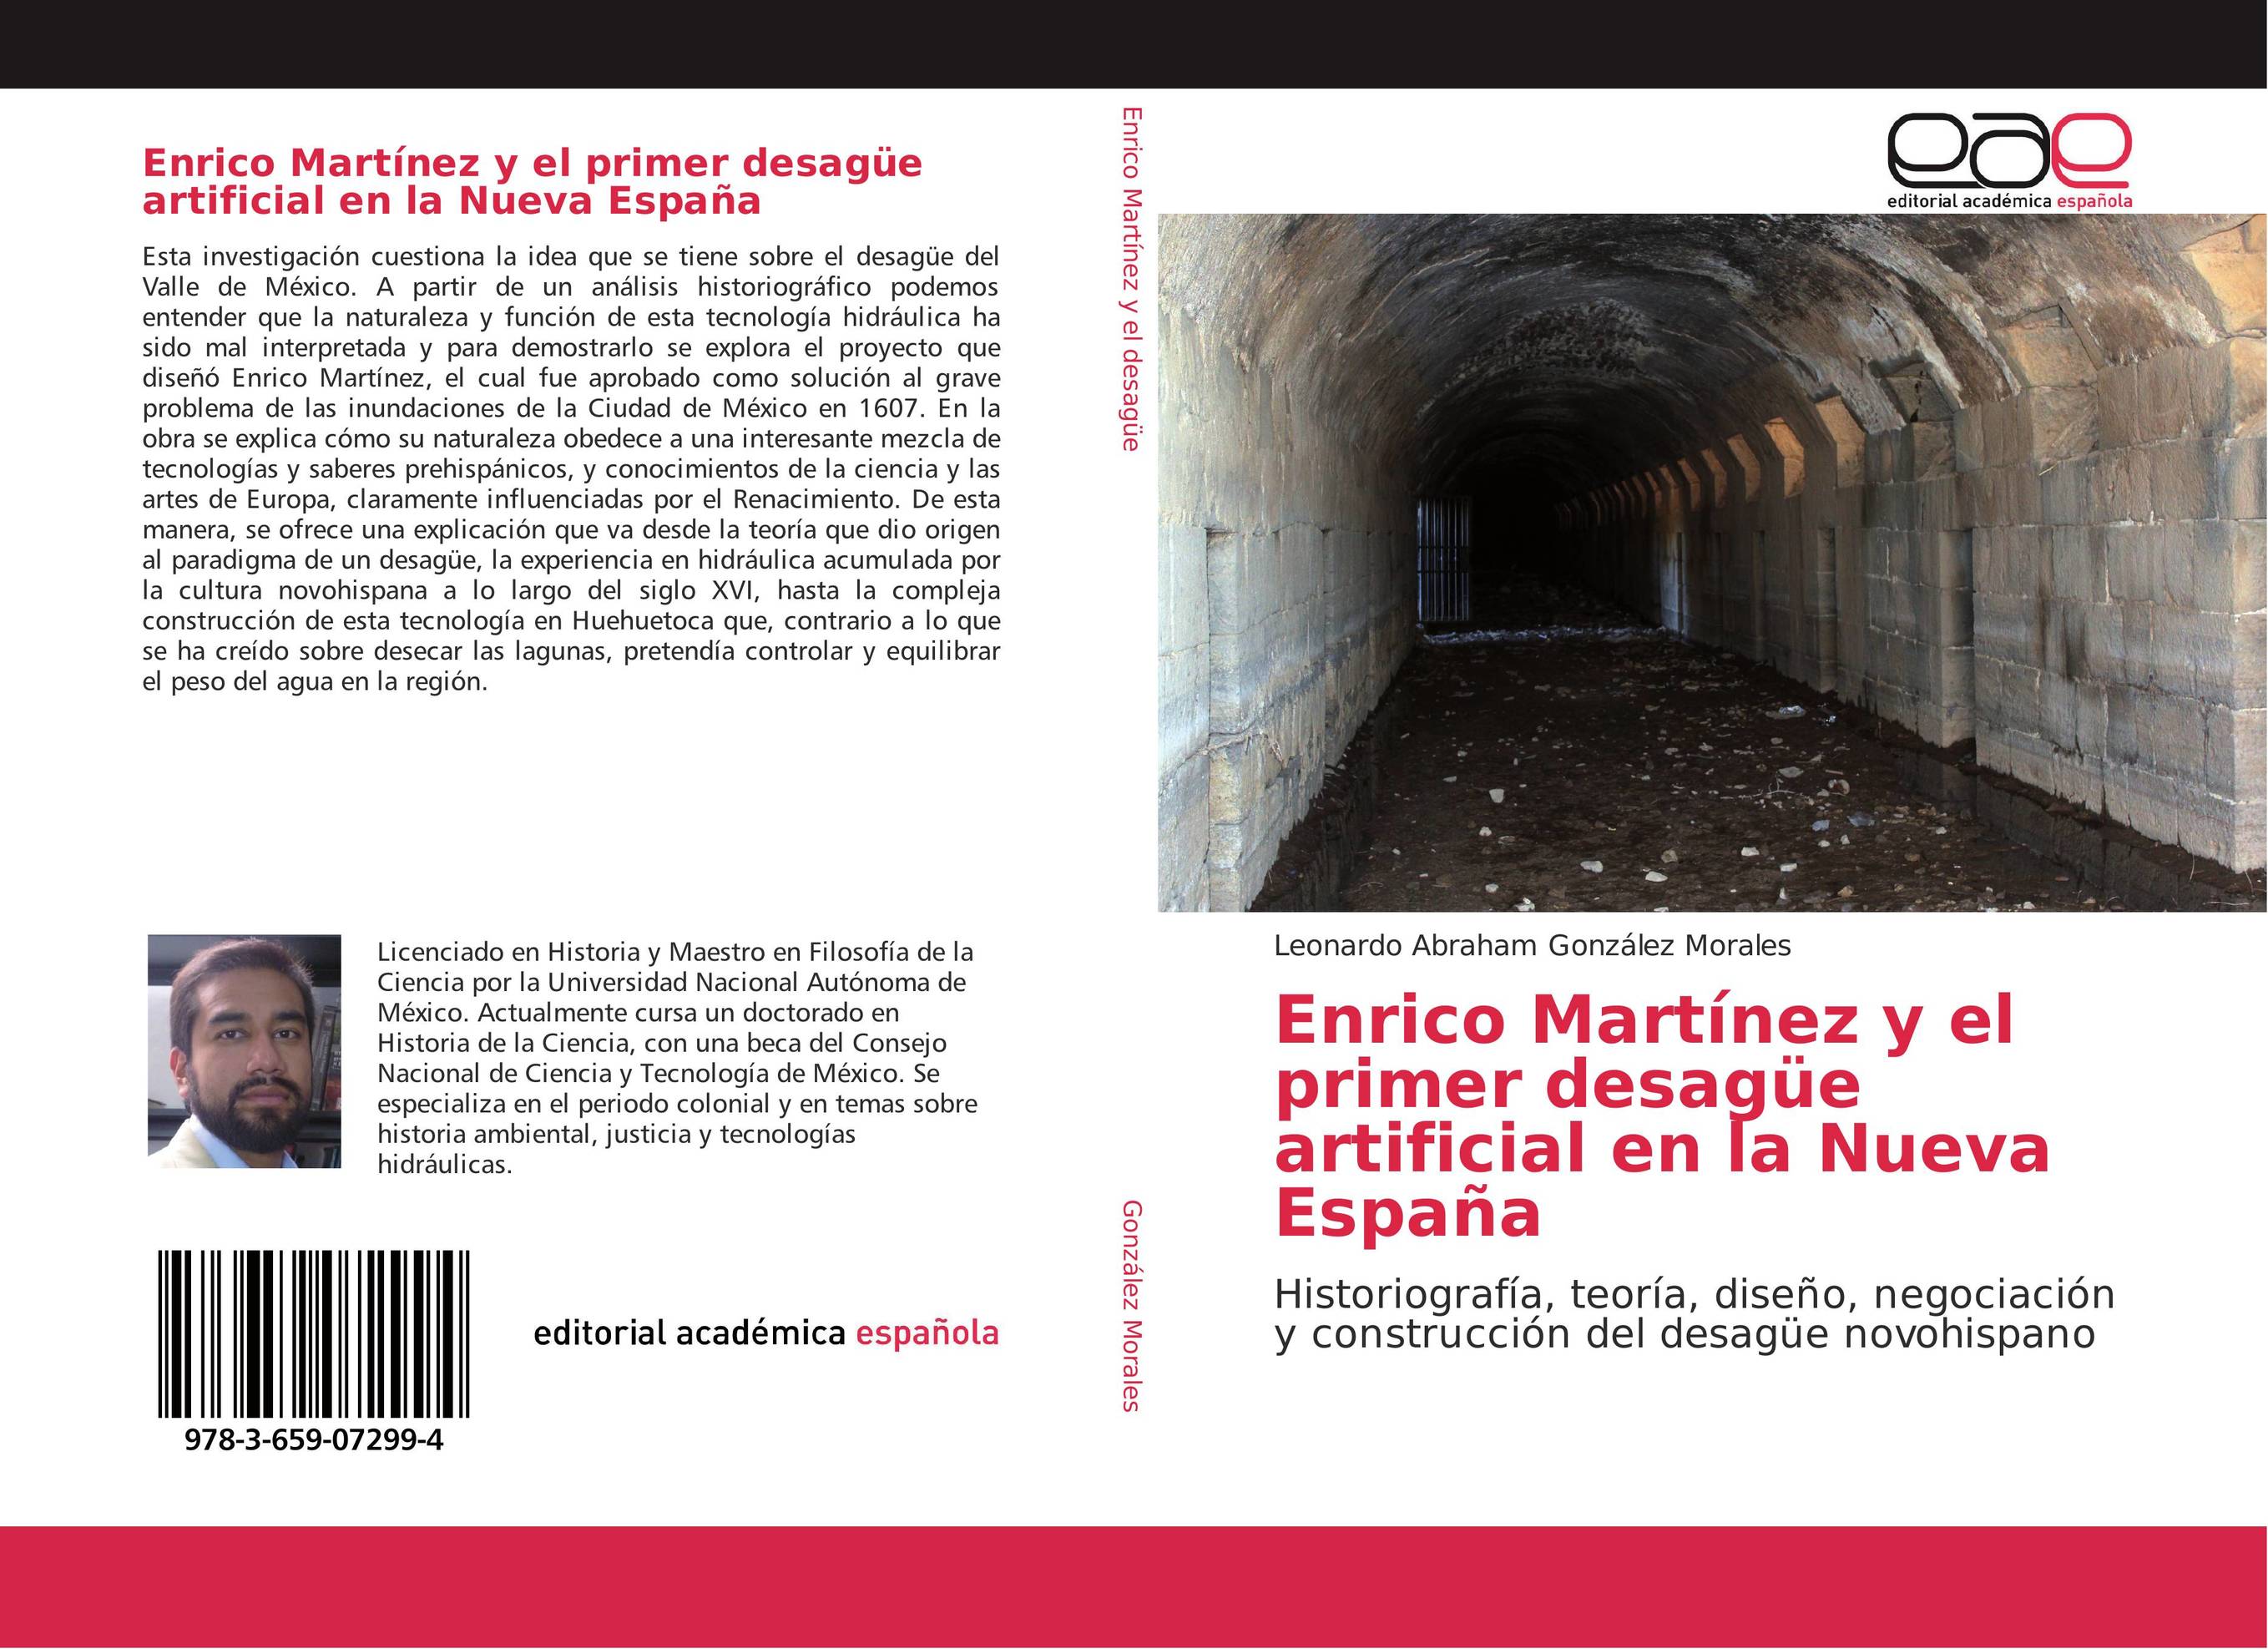 Enrico Martínez y el primer desagüe artificial en la Nueva España